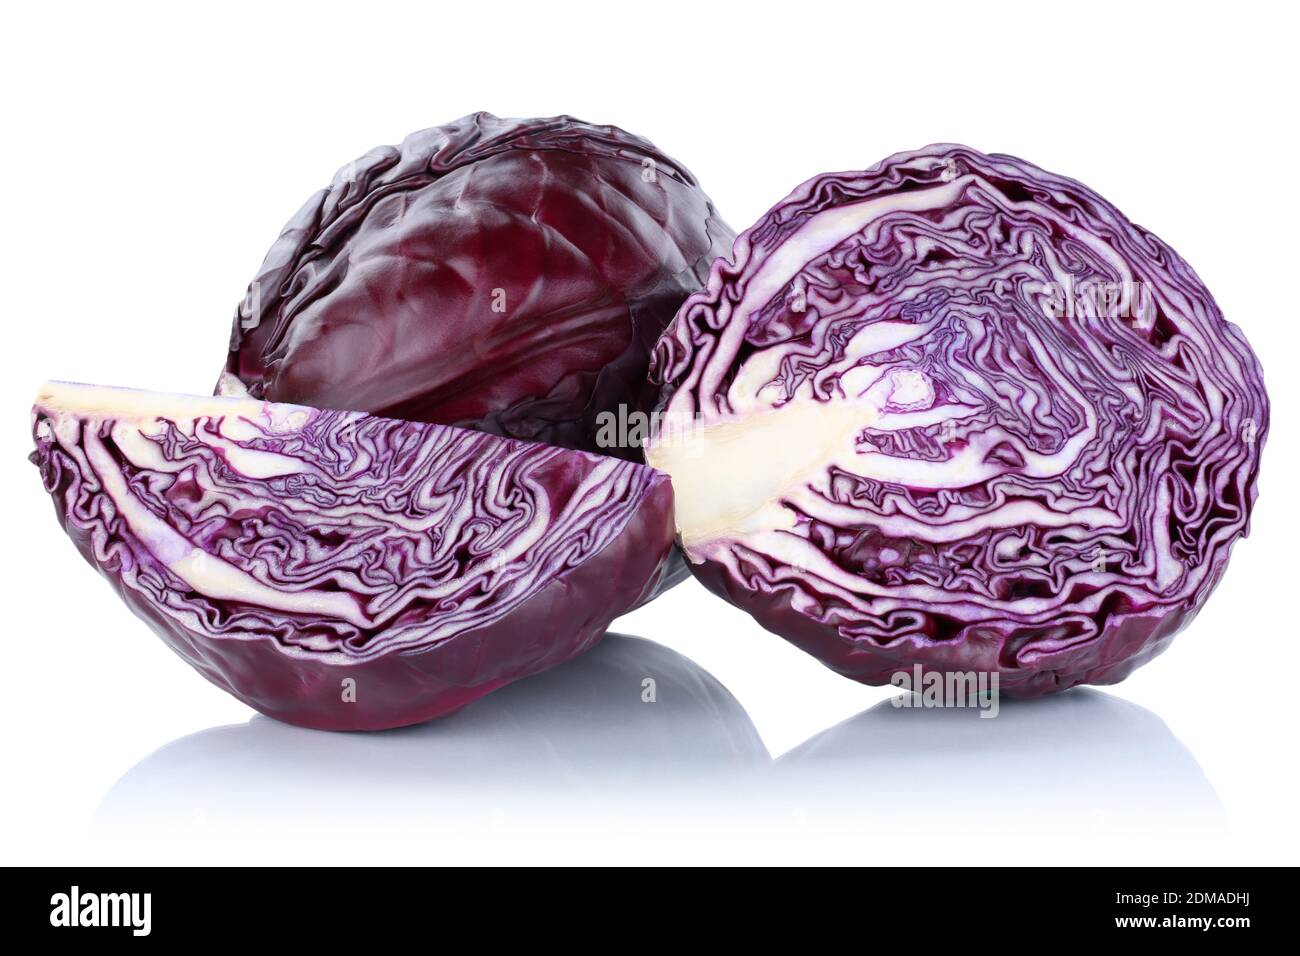 Blaukraut Rotkohl Kraut frisch geschnitten Gemüse Freisteller freigestellt isoliert vor einem weissen Hintergrund Foto Stock